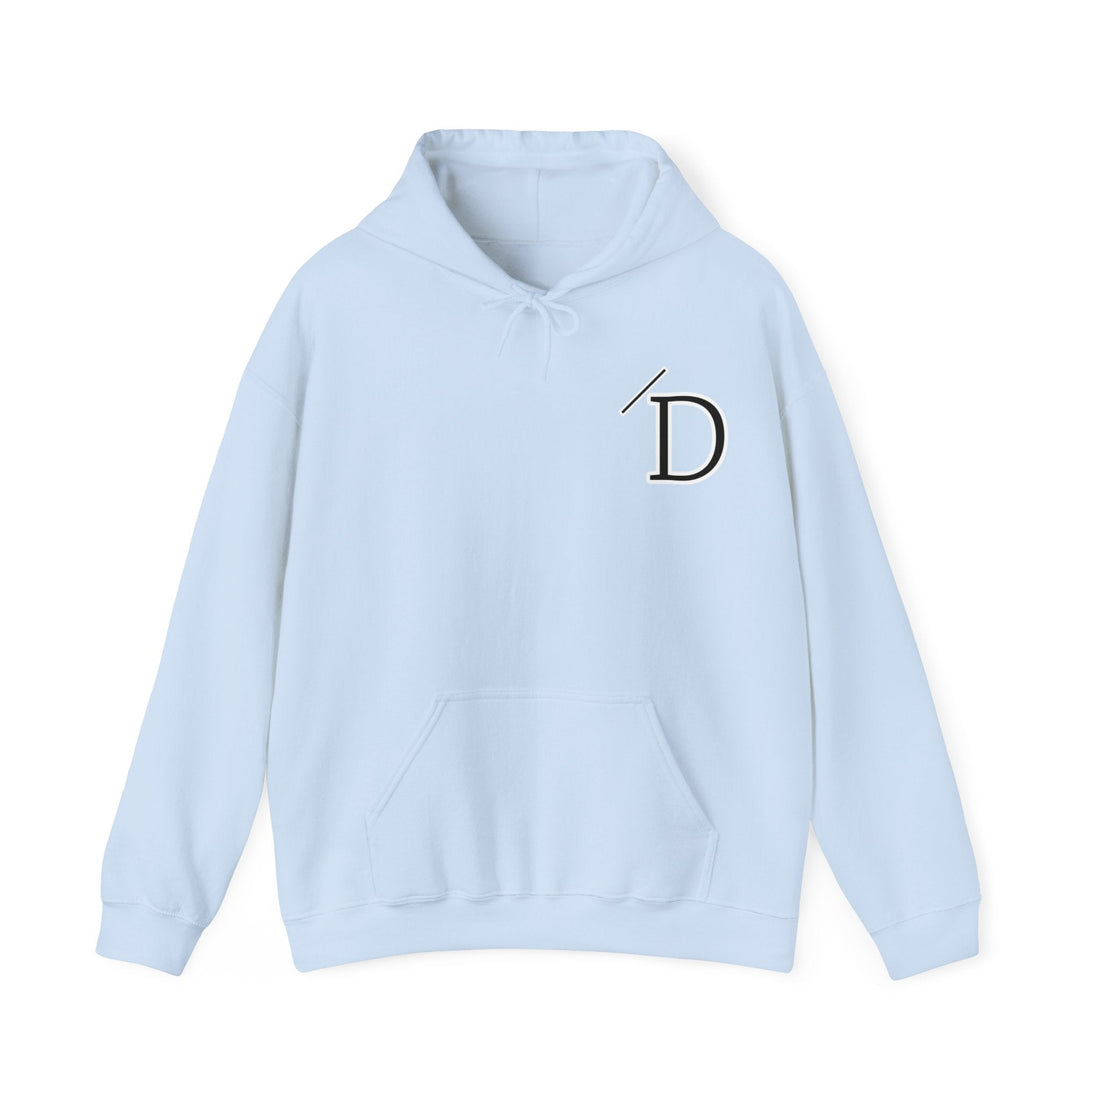 Custom Design for "D" - Hoodie - Positively Sassy - Custom Design for "D"